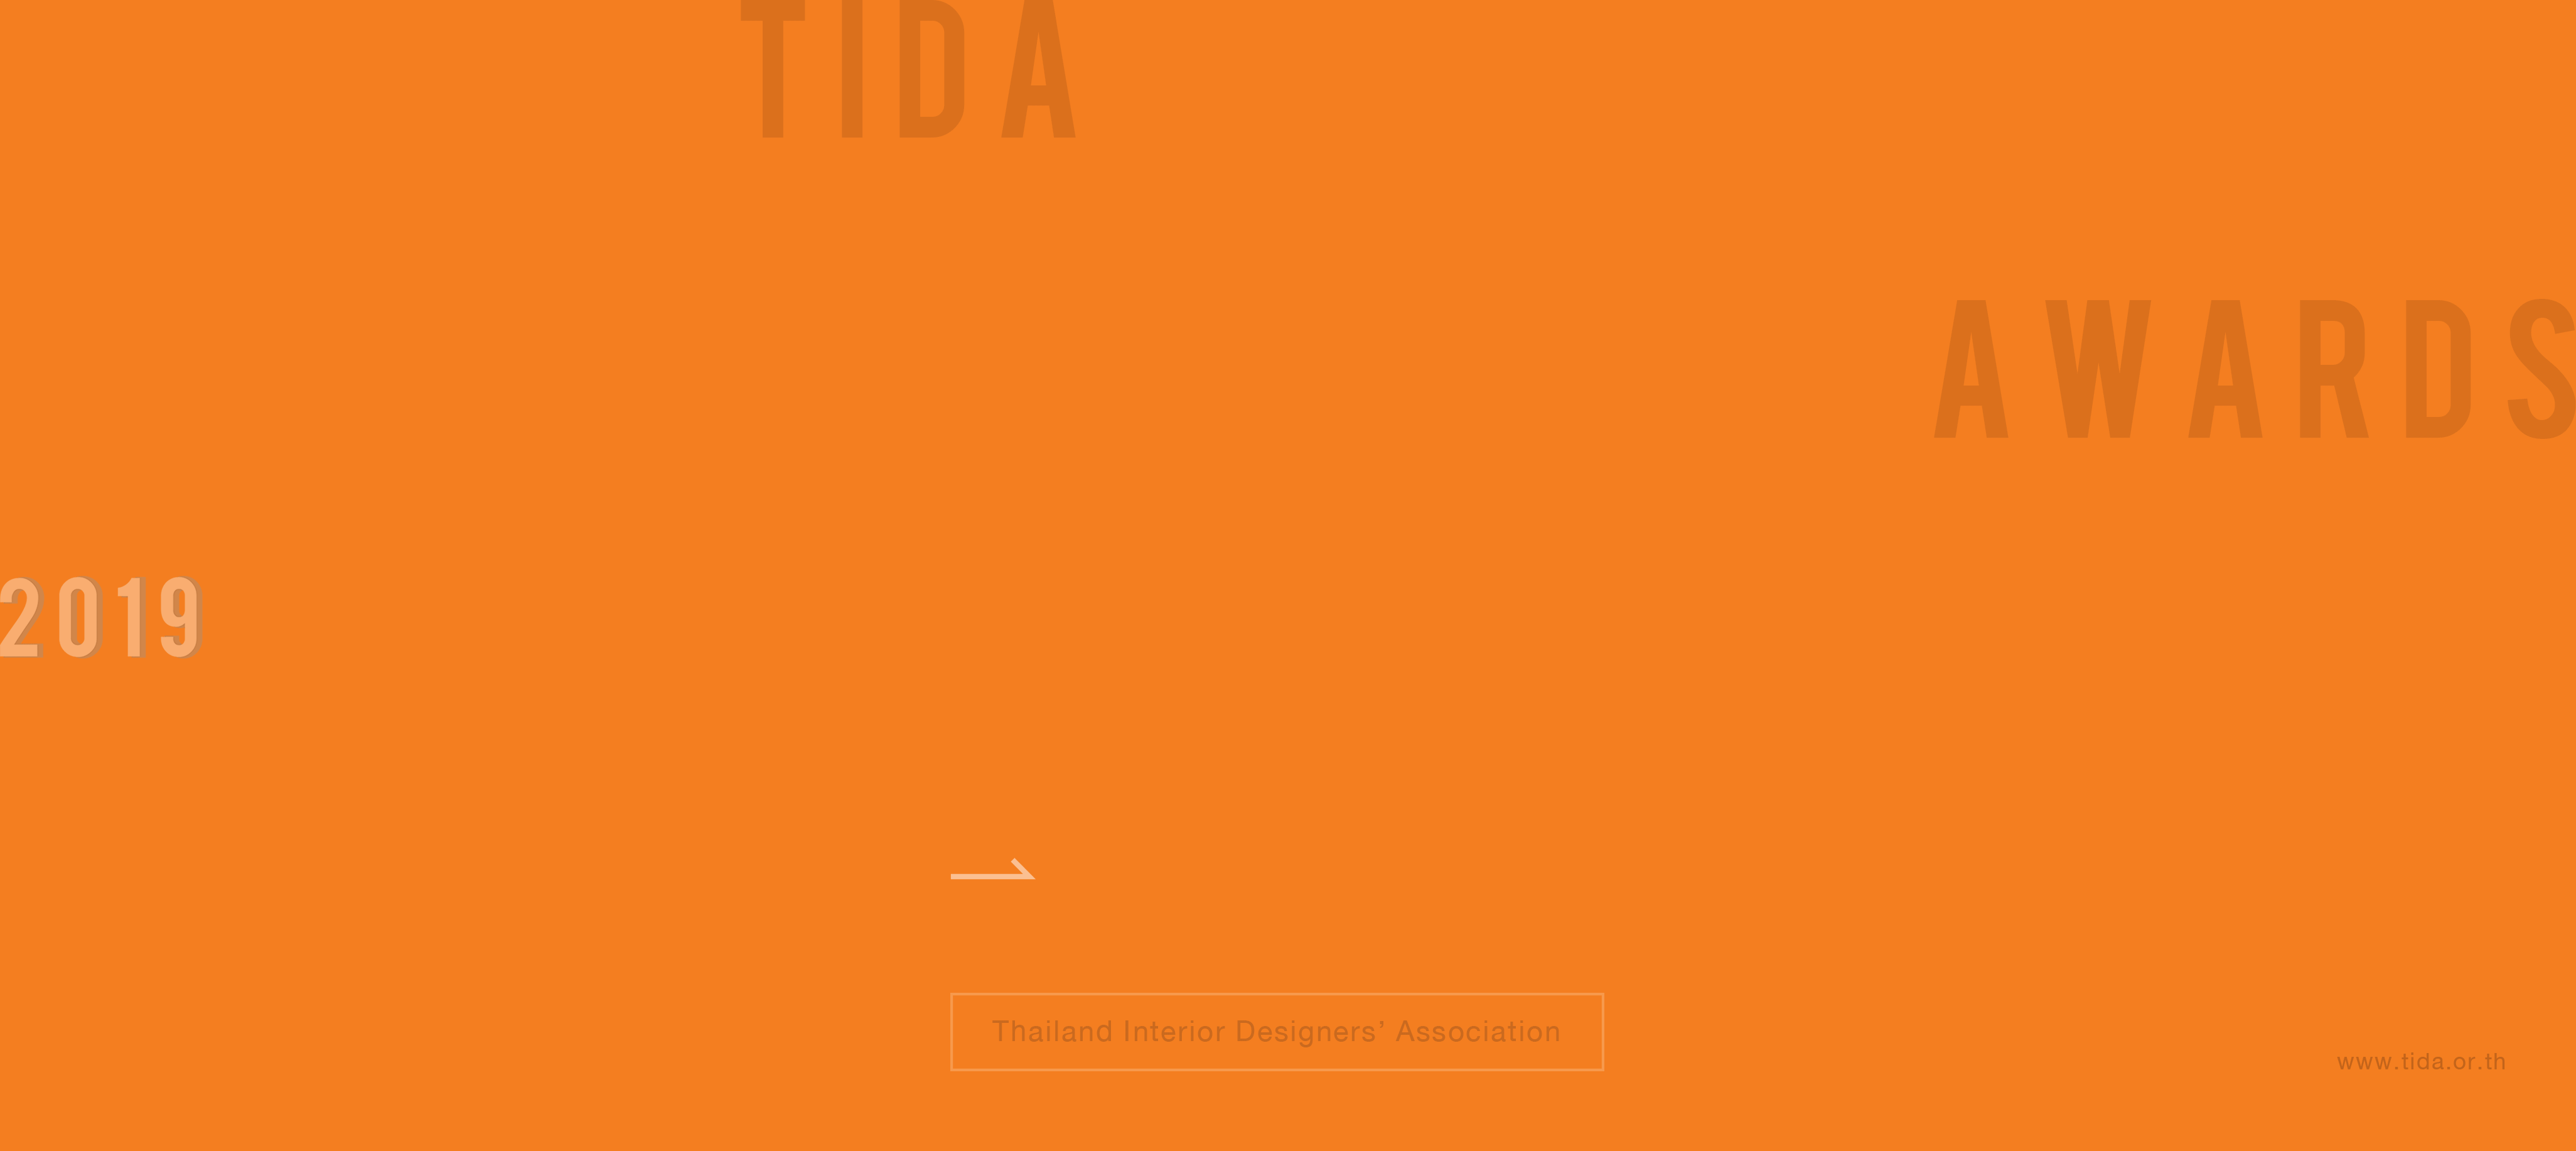 Tida Thailand Interior Designers Association